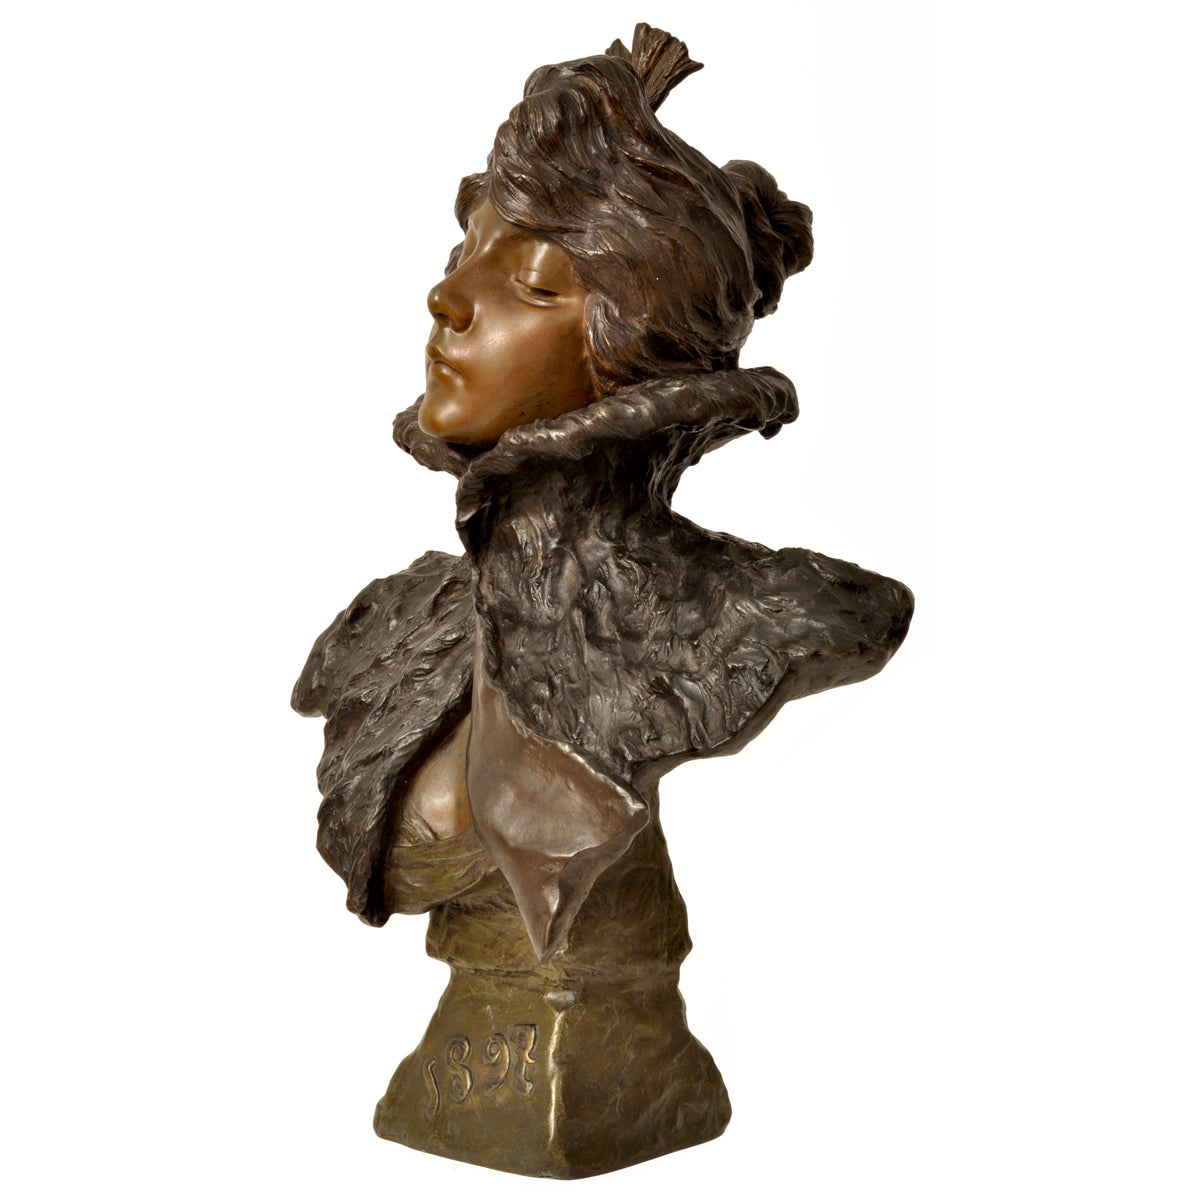 Antique French Art Nouveau Bronze Female Bust Sculpture "1897" Emanuel Villanis